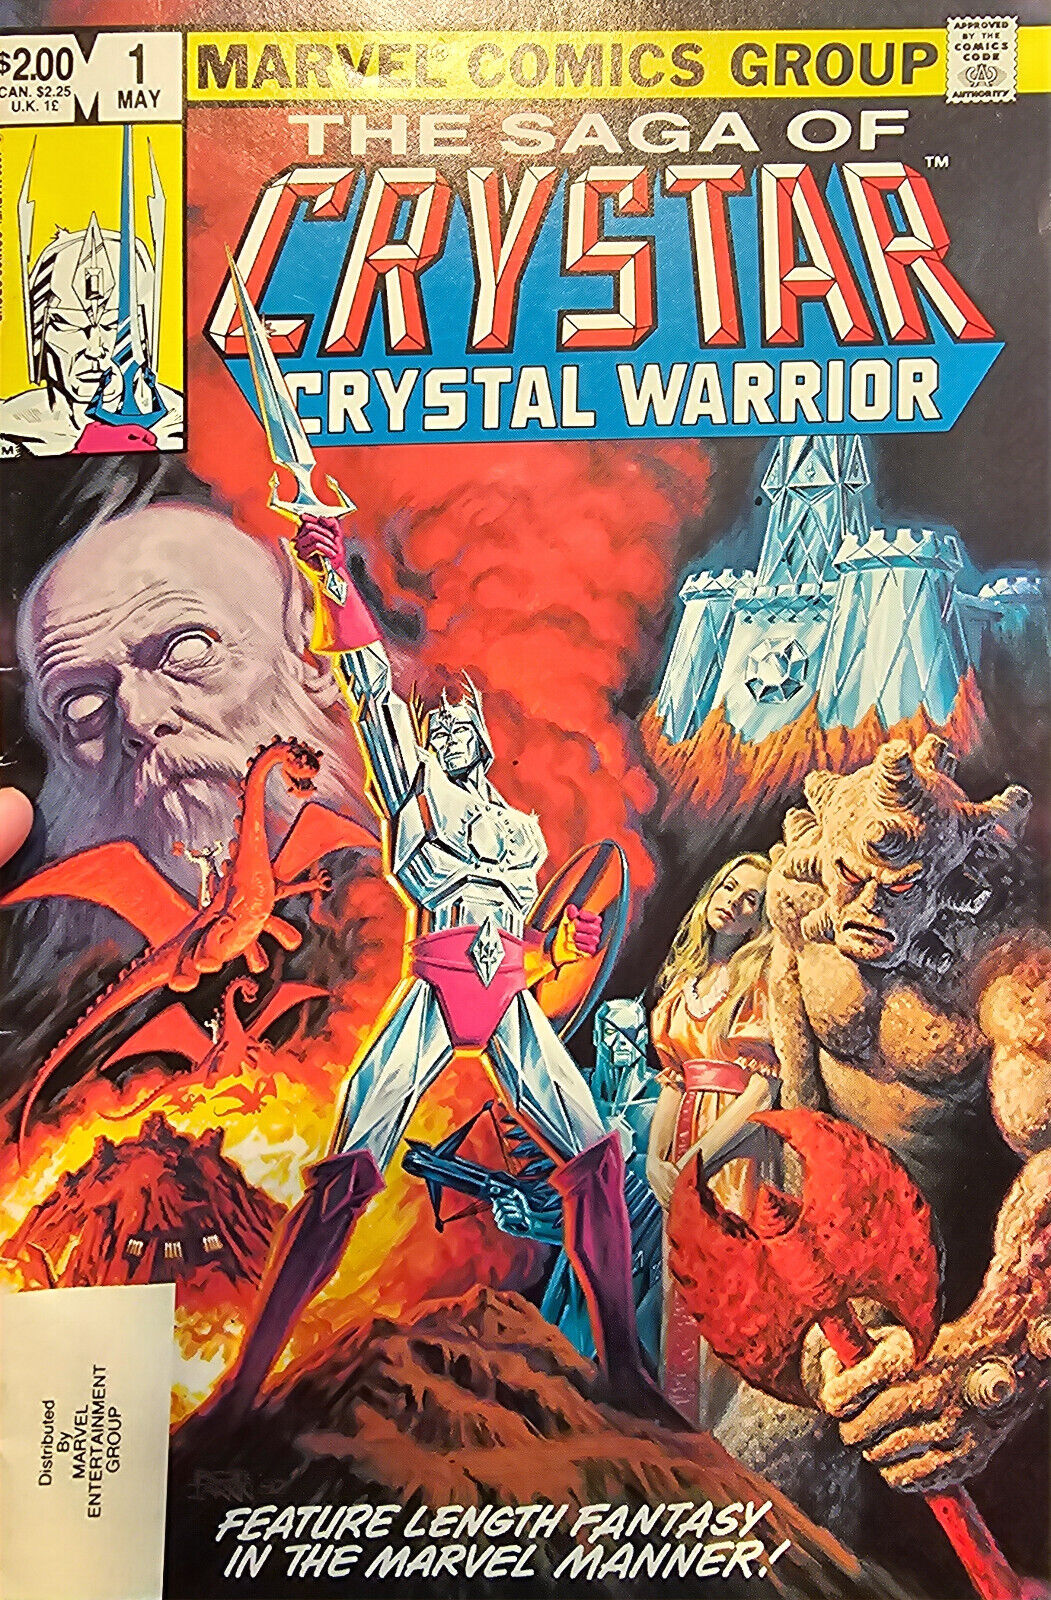 The Saga of Crystar Crystal Warrior #1 Marvel Comics